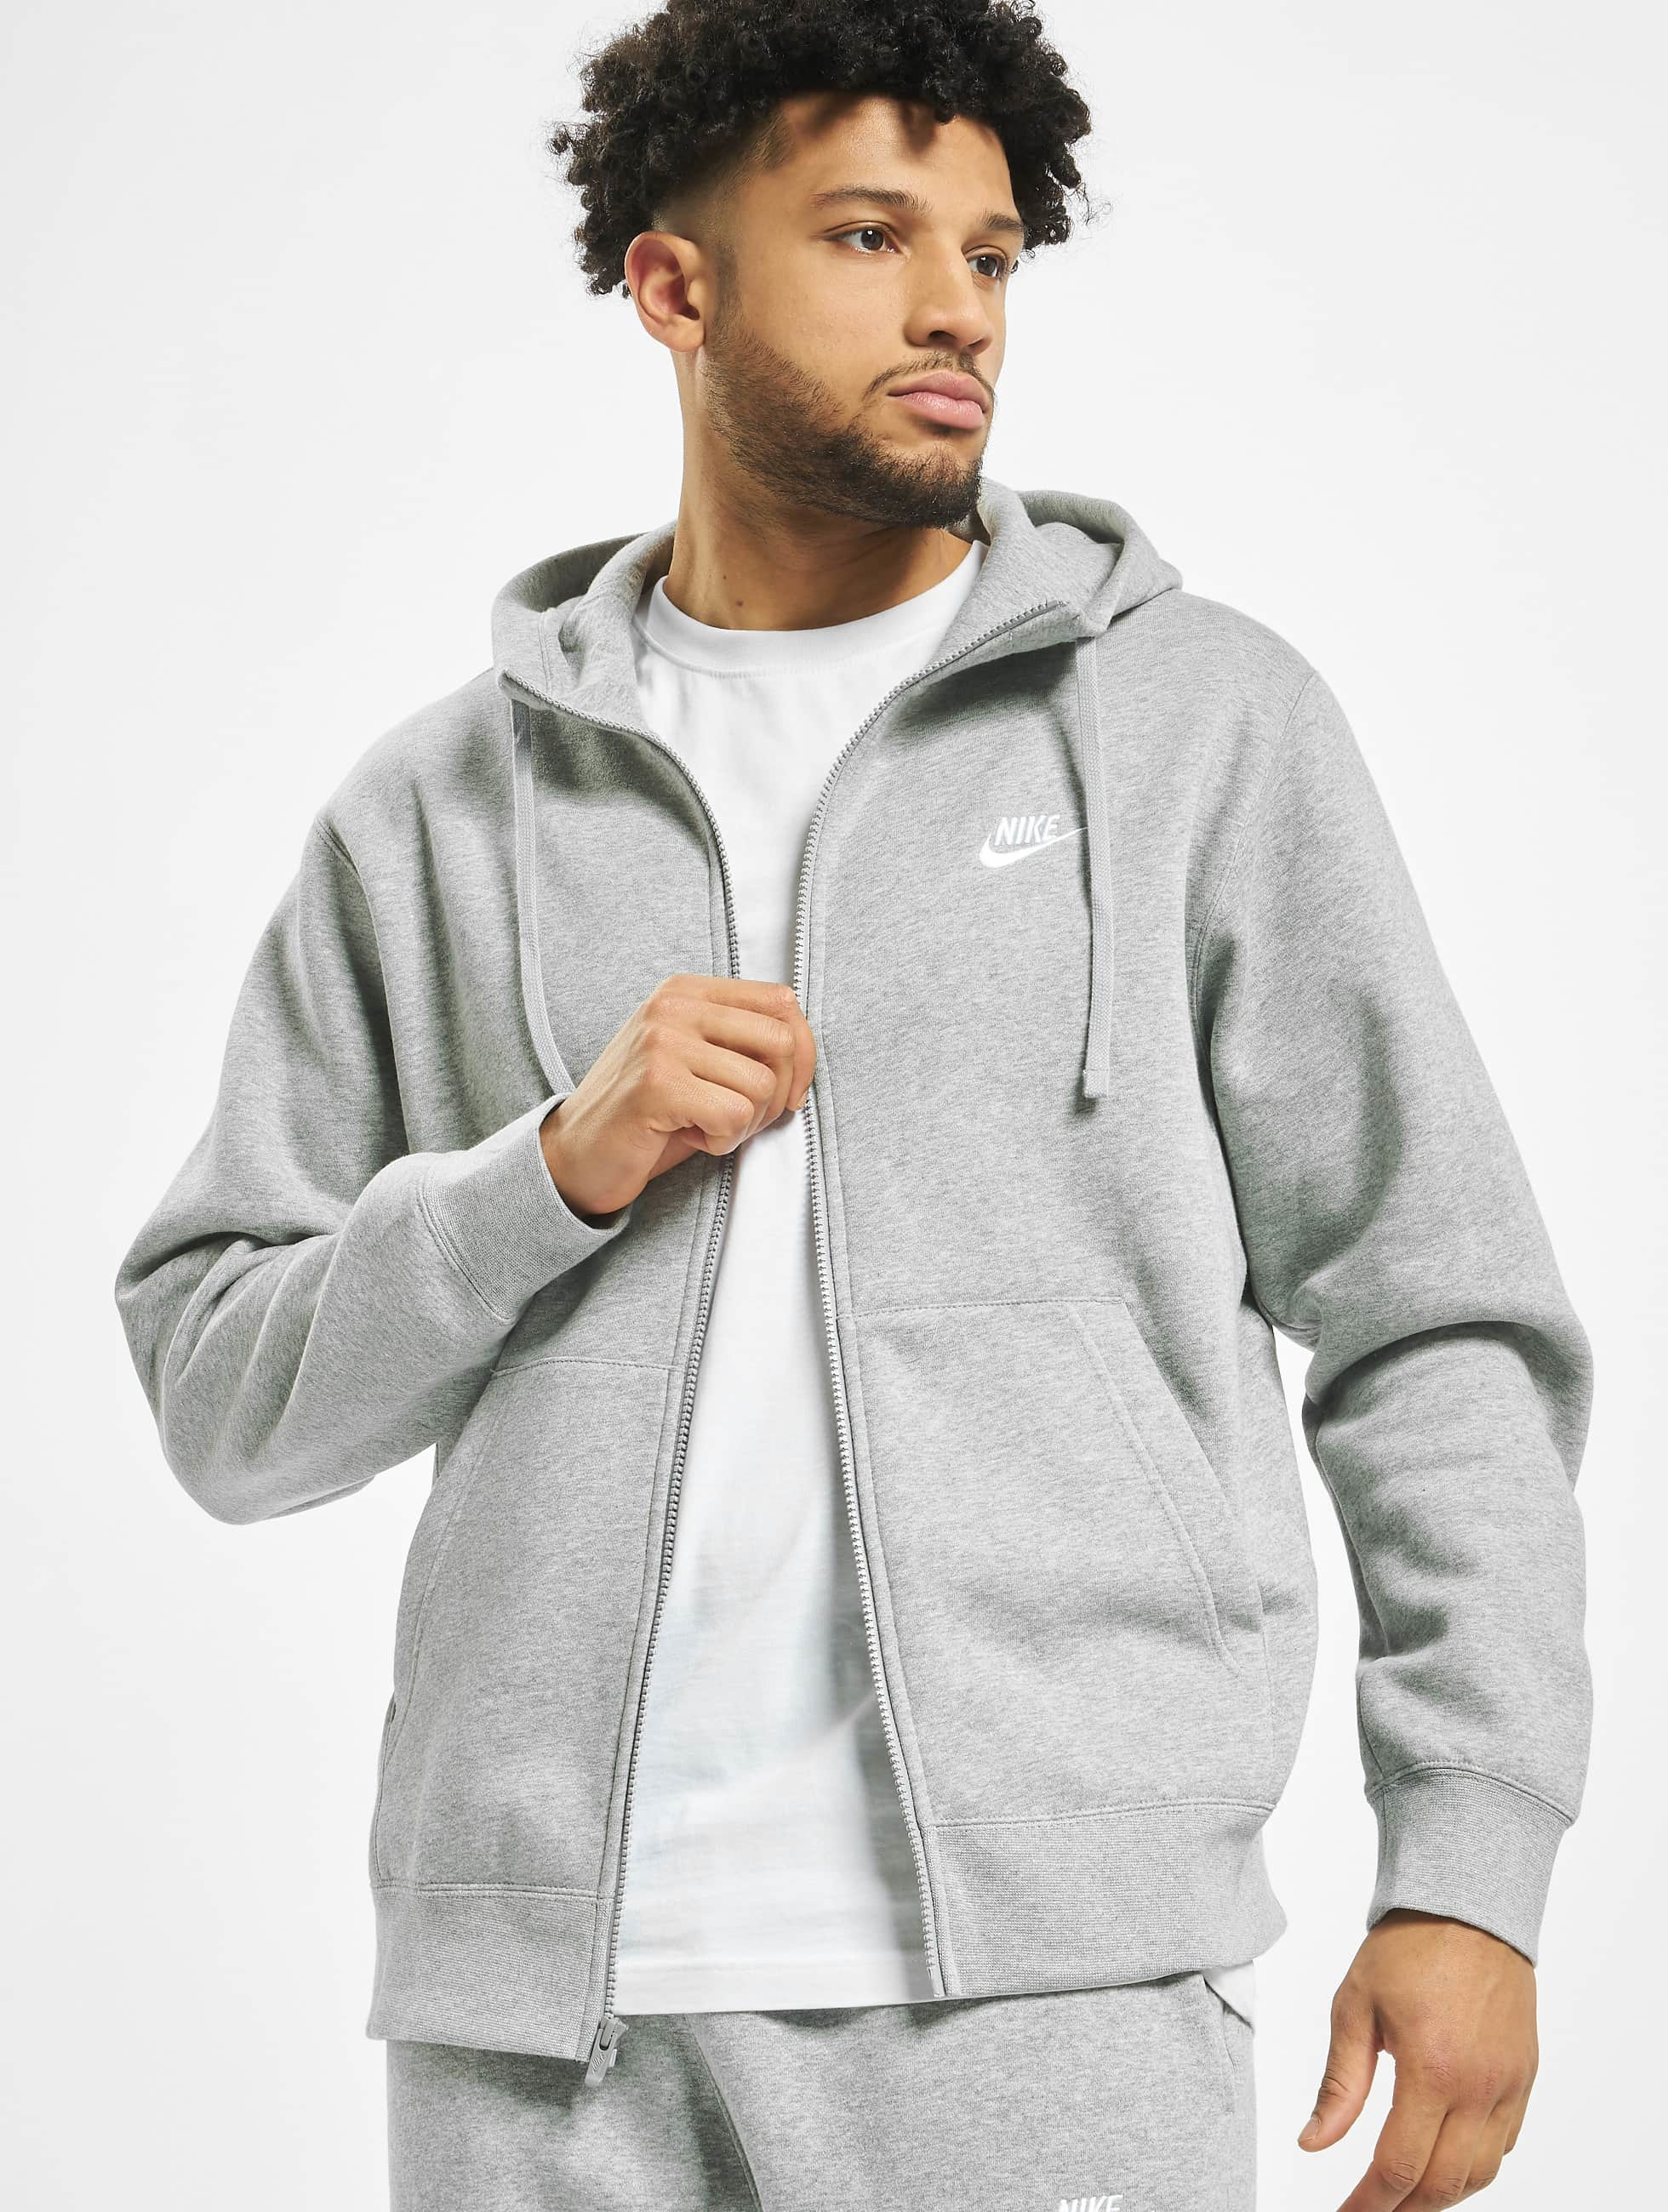 Nike Overwear / Zip Hoodie Club Hoodie Full in grey 714957